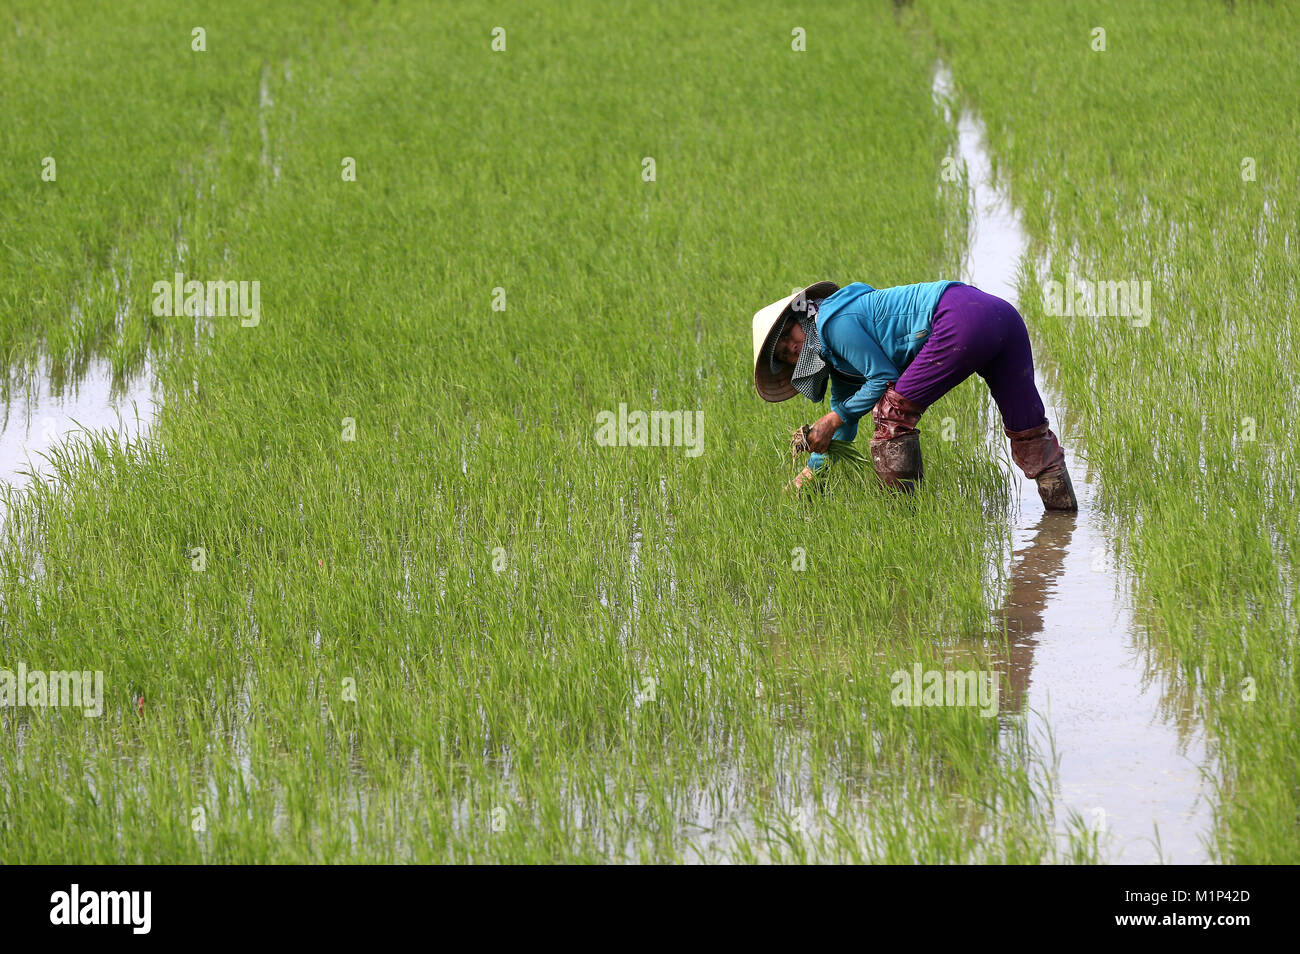 Campesino vietnamita trabajando en su campo de arroz trasplantando arroz joven, Hoi An, Vietnam, Indochina, en el sudeste de Asia, Asia Foto de stock